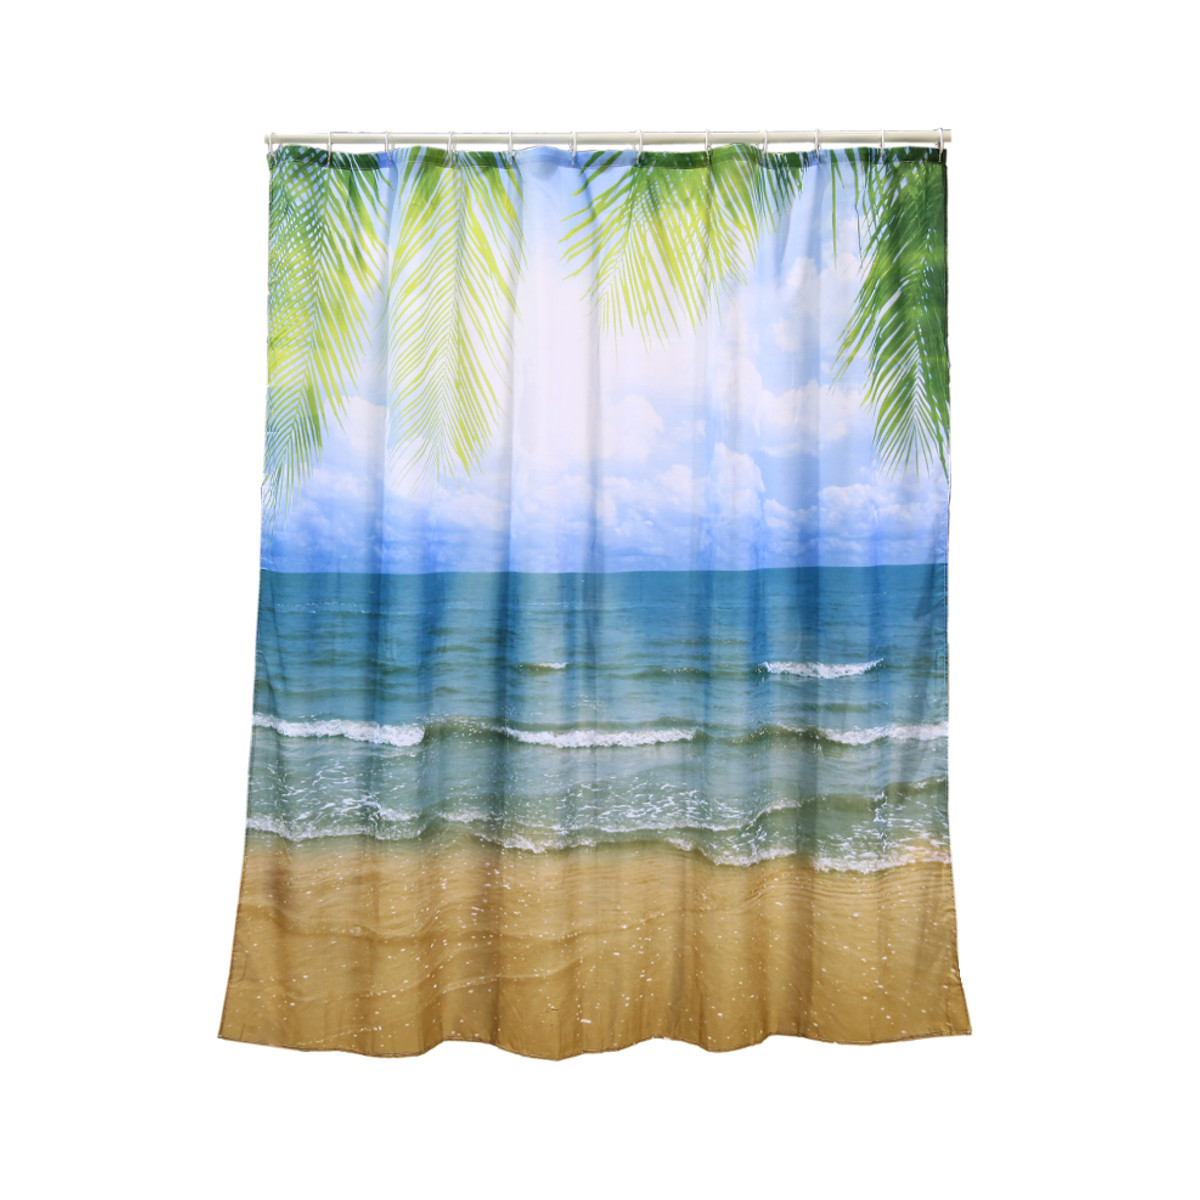 Beach Scene Shower Curtain Smyla Uk, Beach Scene Shower Curtain Uk